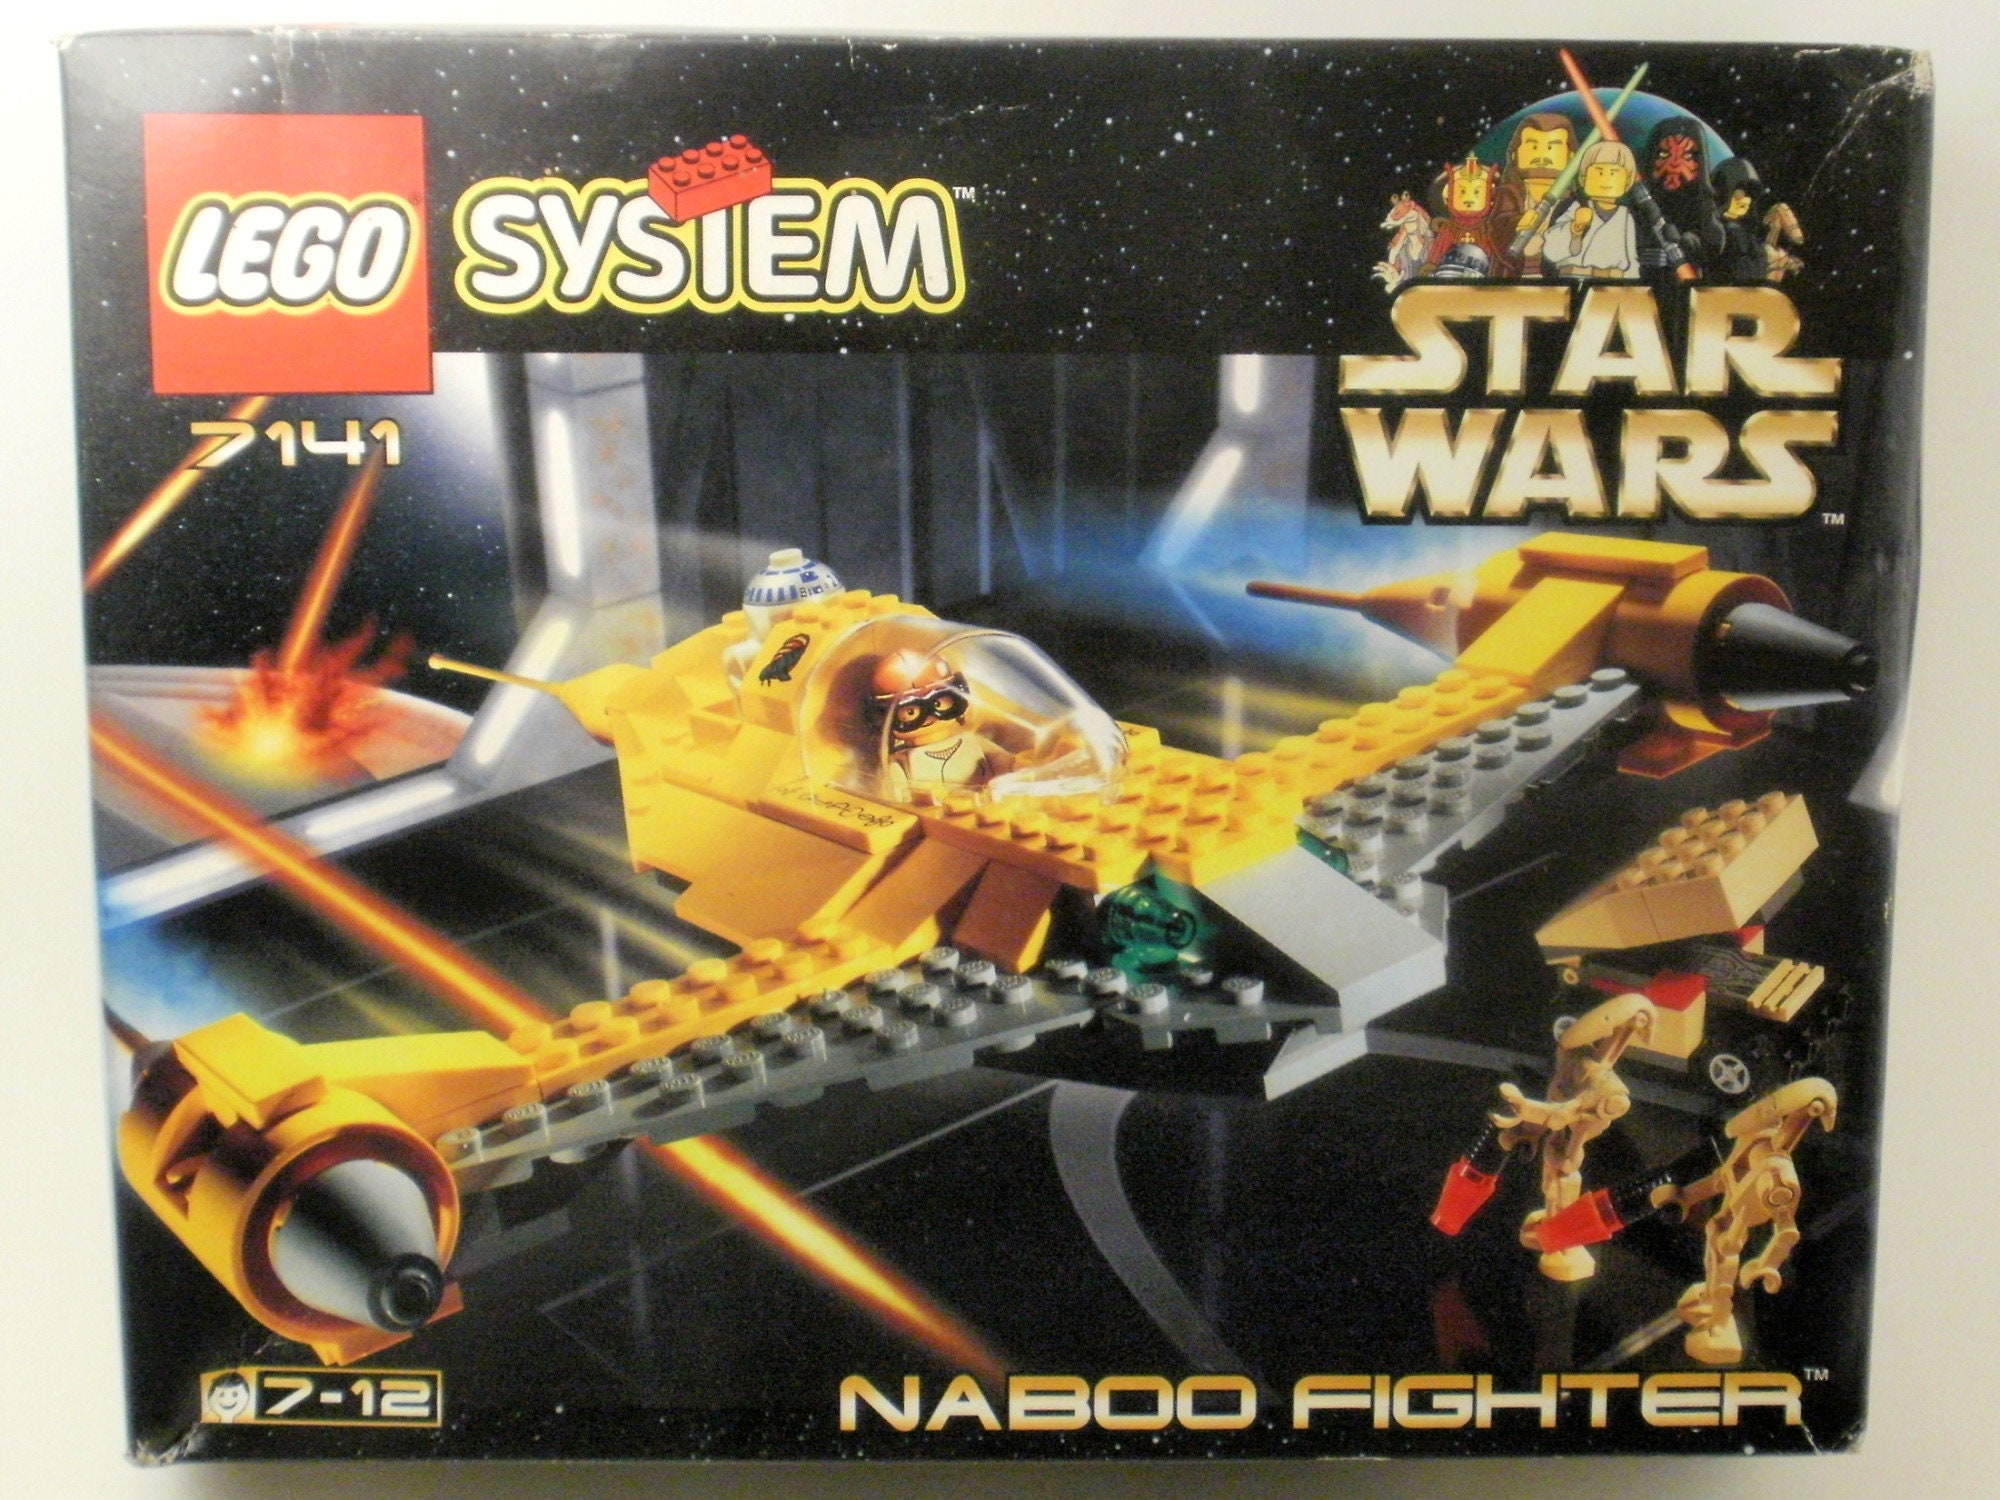 LEGO STAR WARS Episode 1 7141 Naboo - Etsy Singapore